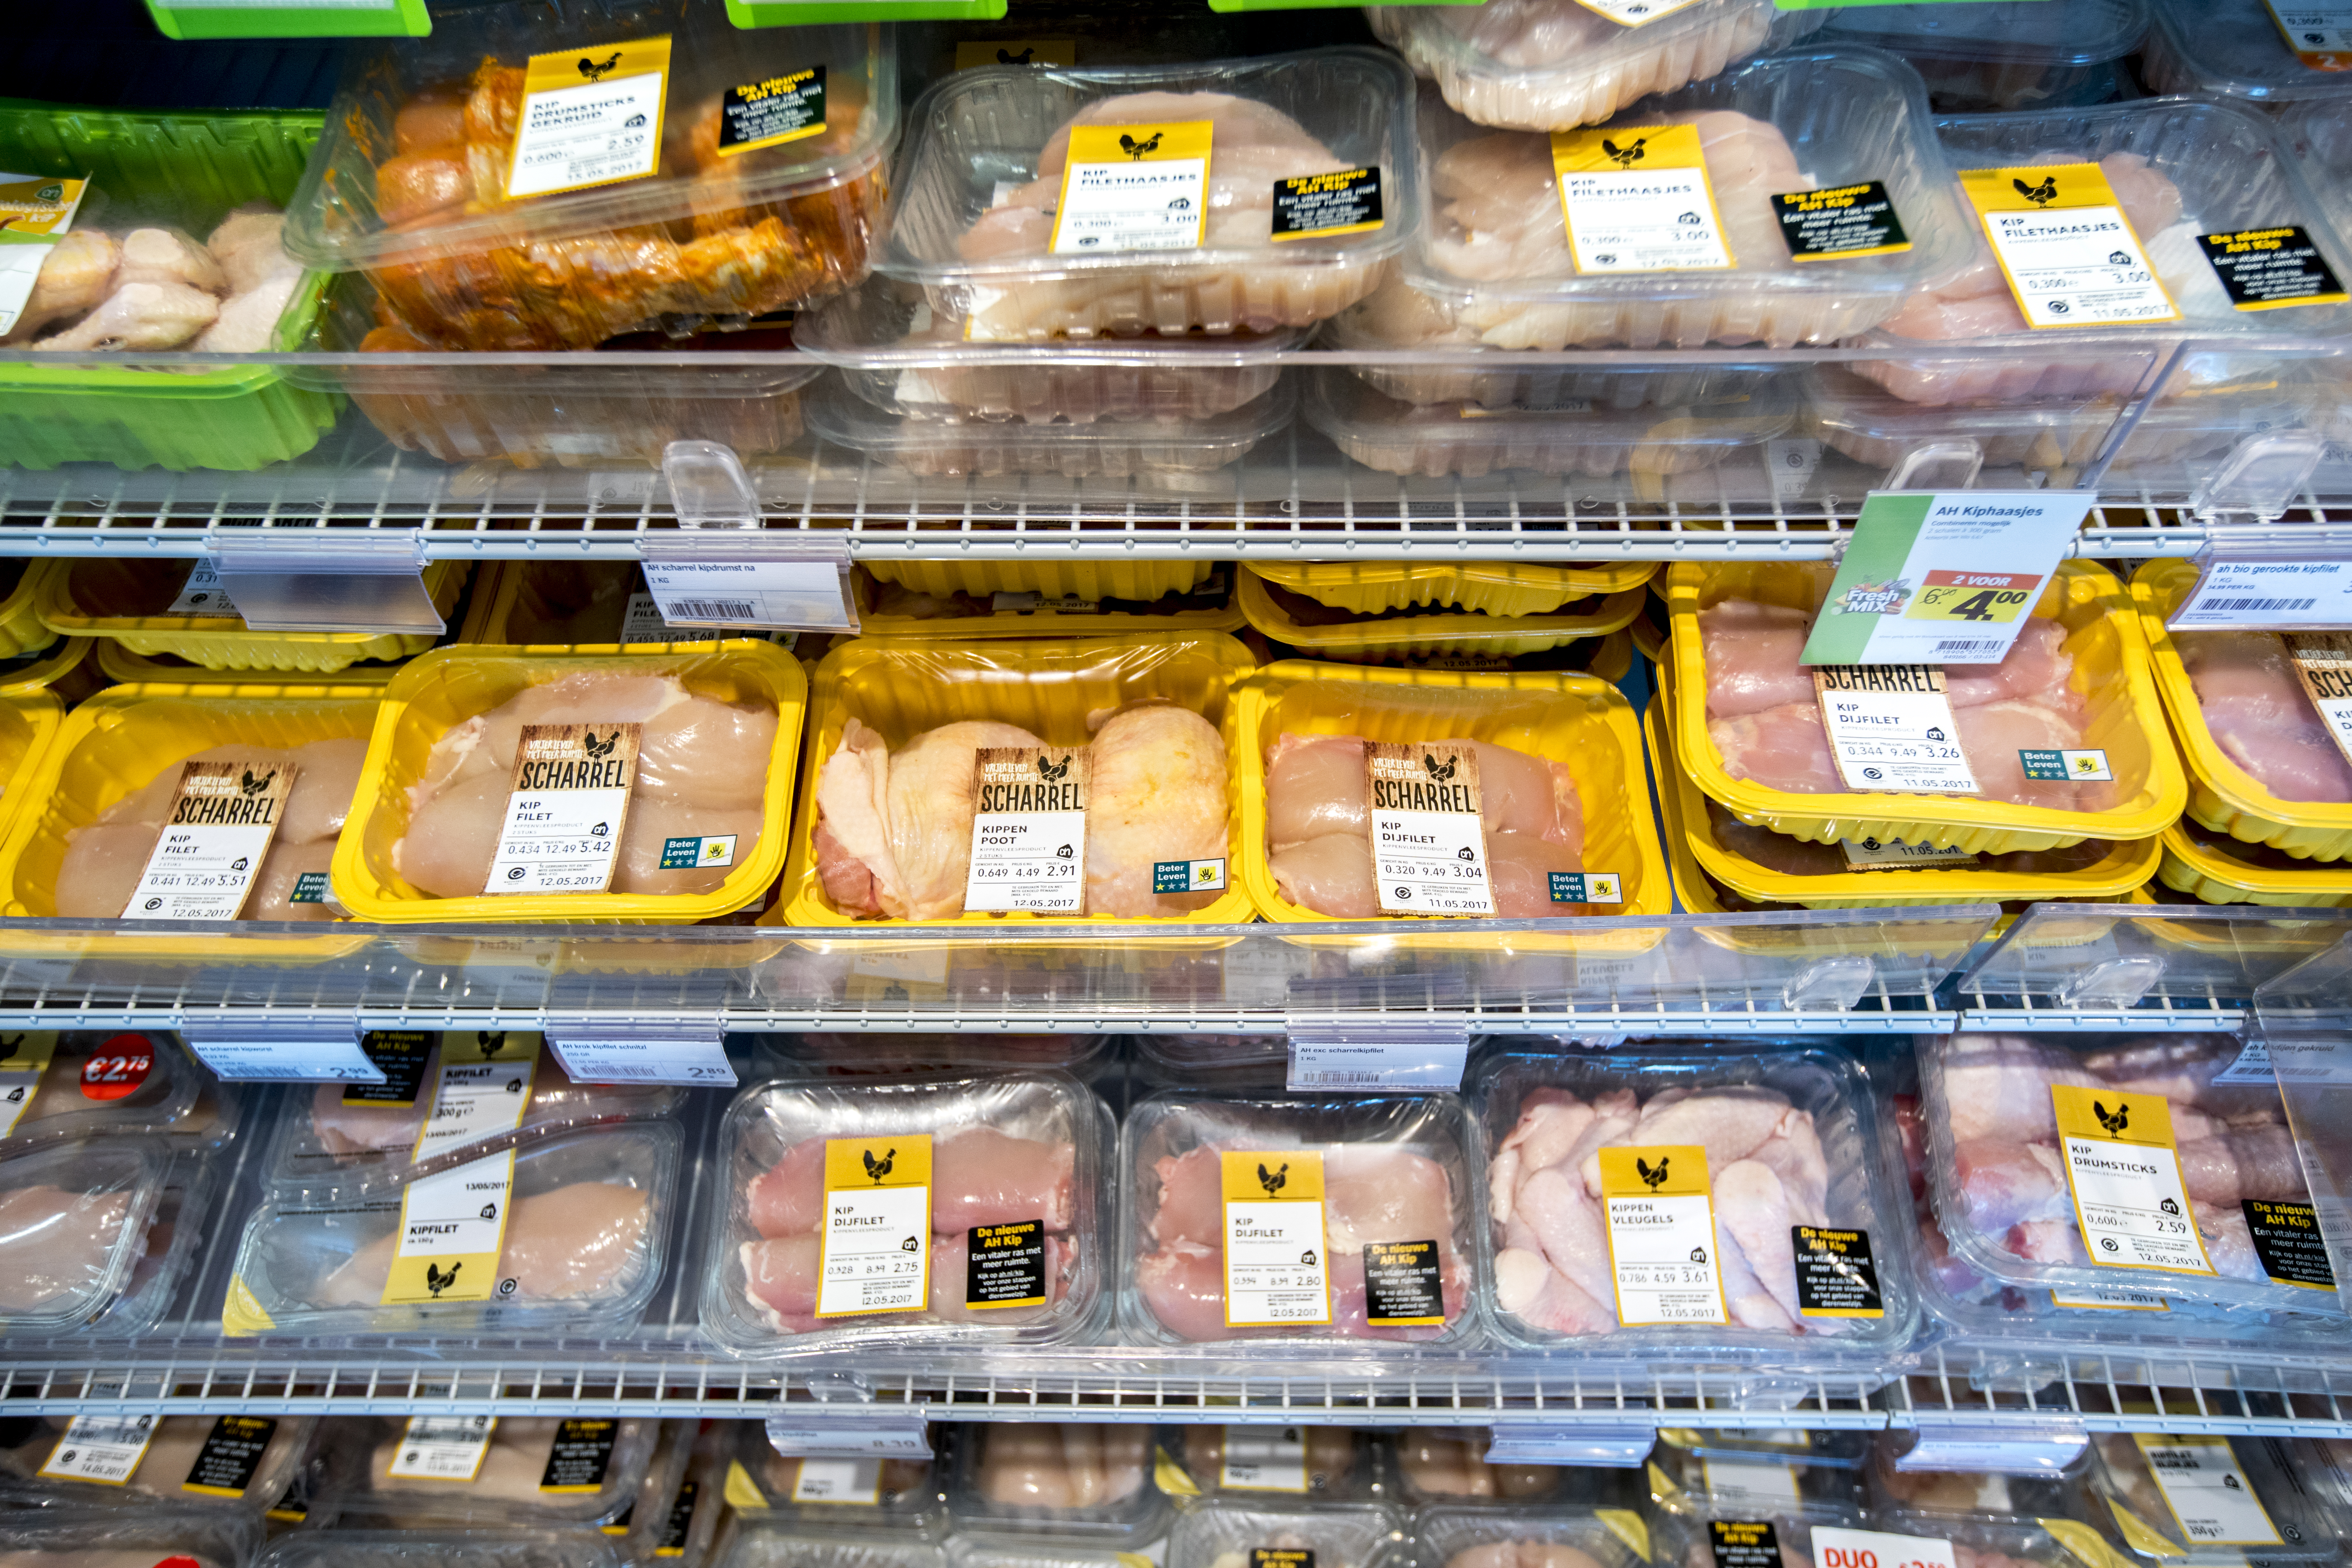 2017-05-29 00:00:00 LOPPERSUM - Kippenvlees in de koeling van supermarktketen Albert Heijn. ANP JERRY LAMPEN